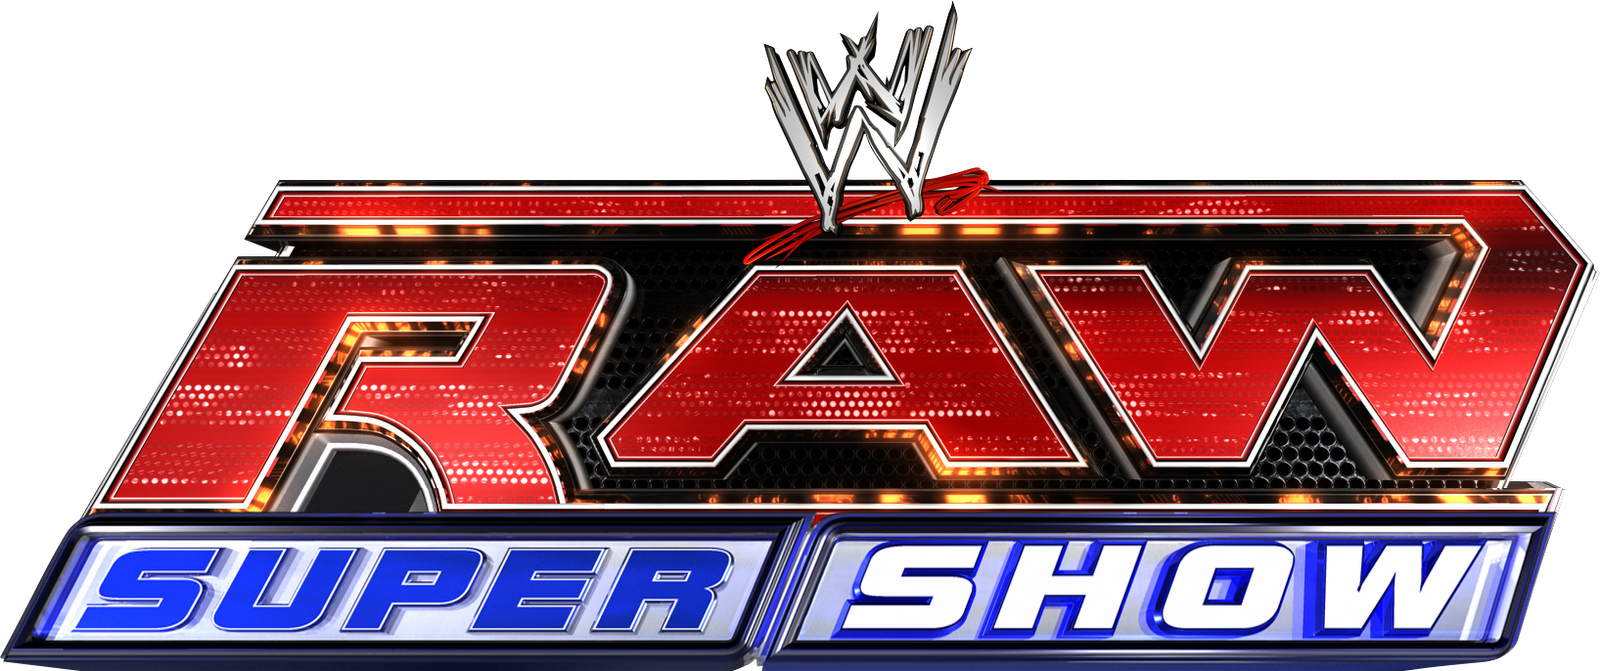 File:WWE RAW 2014 logo 2.png